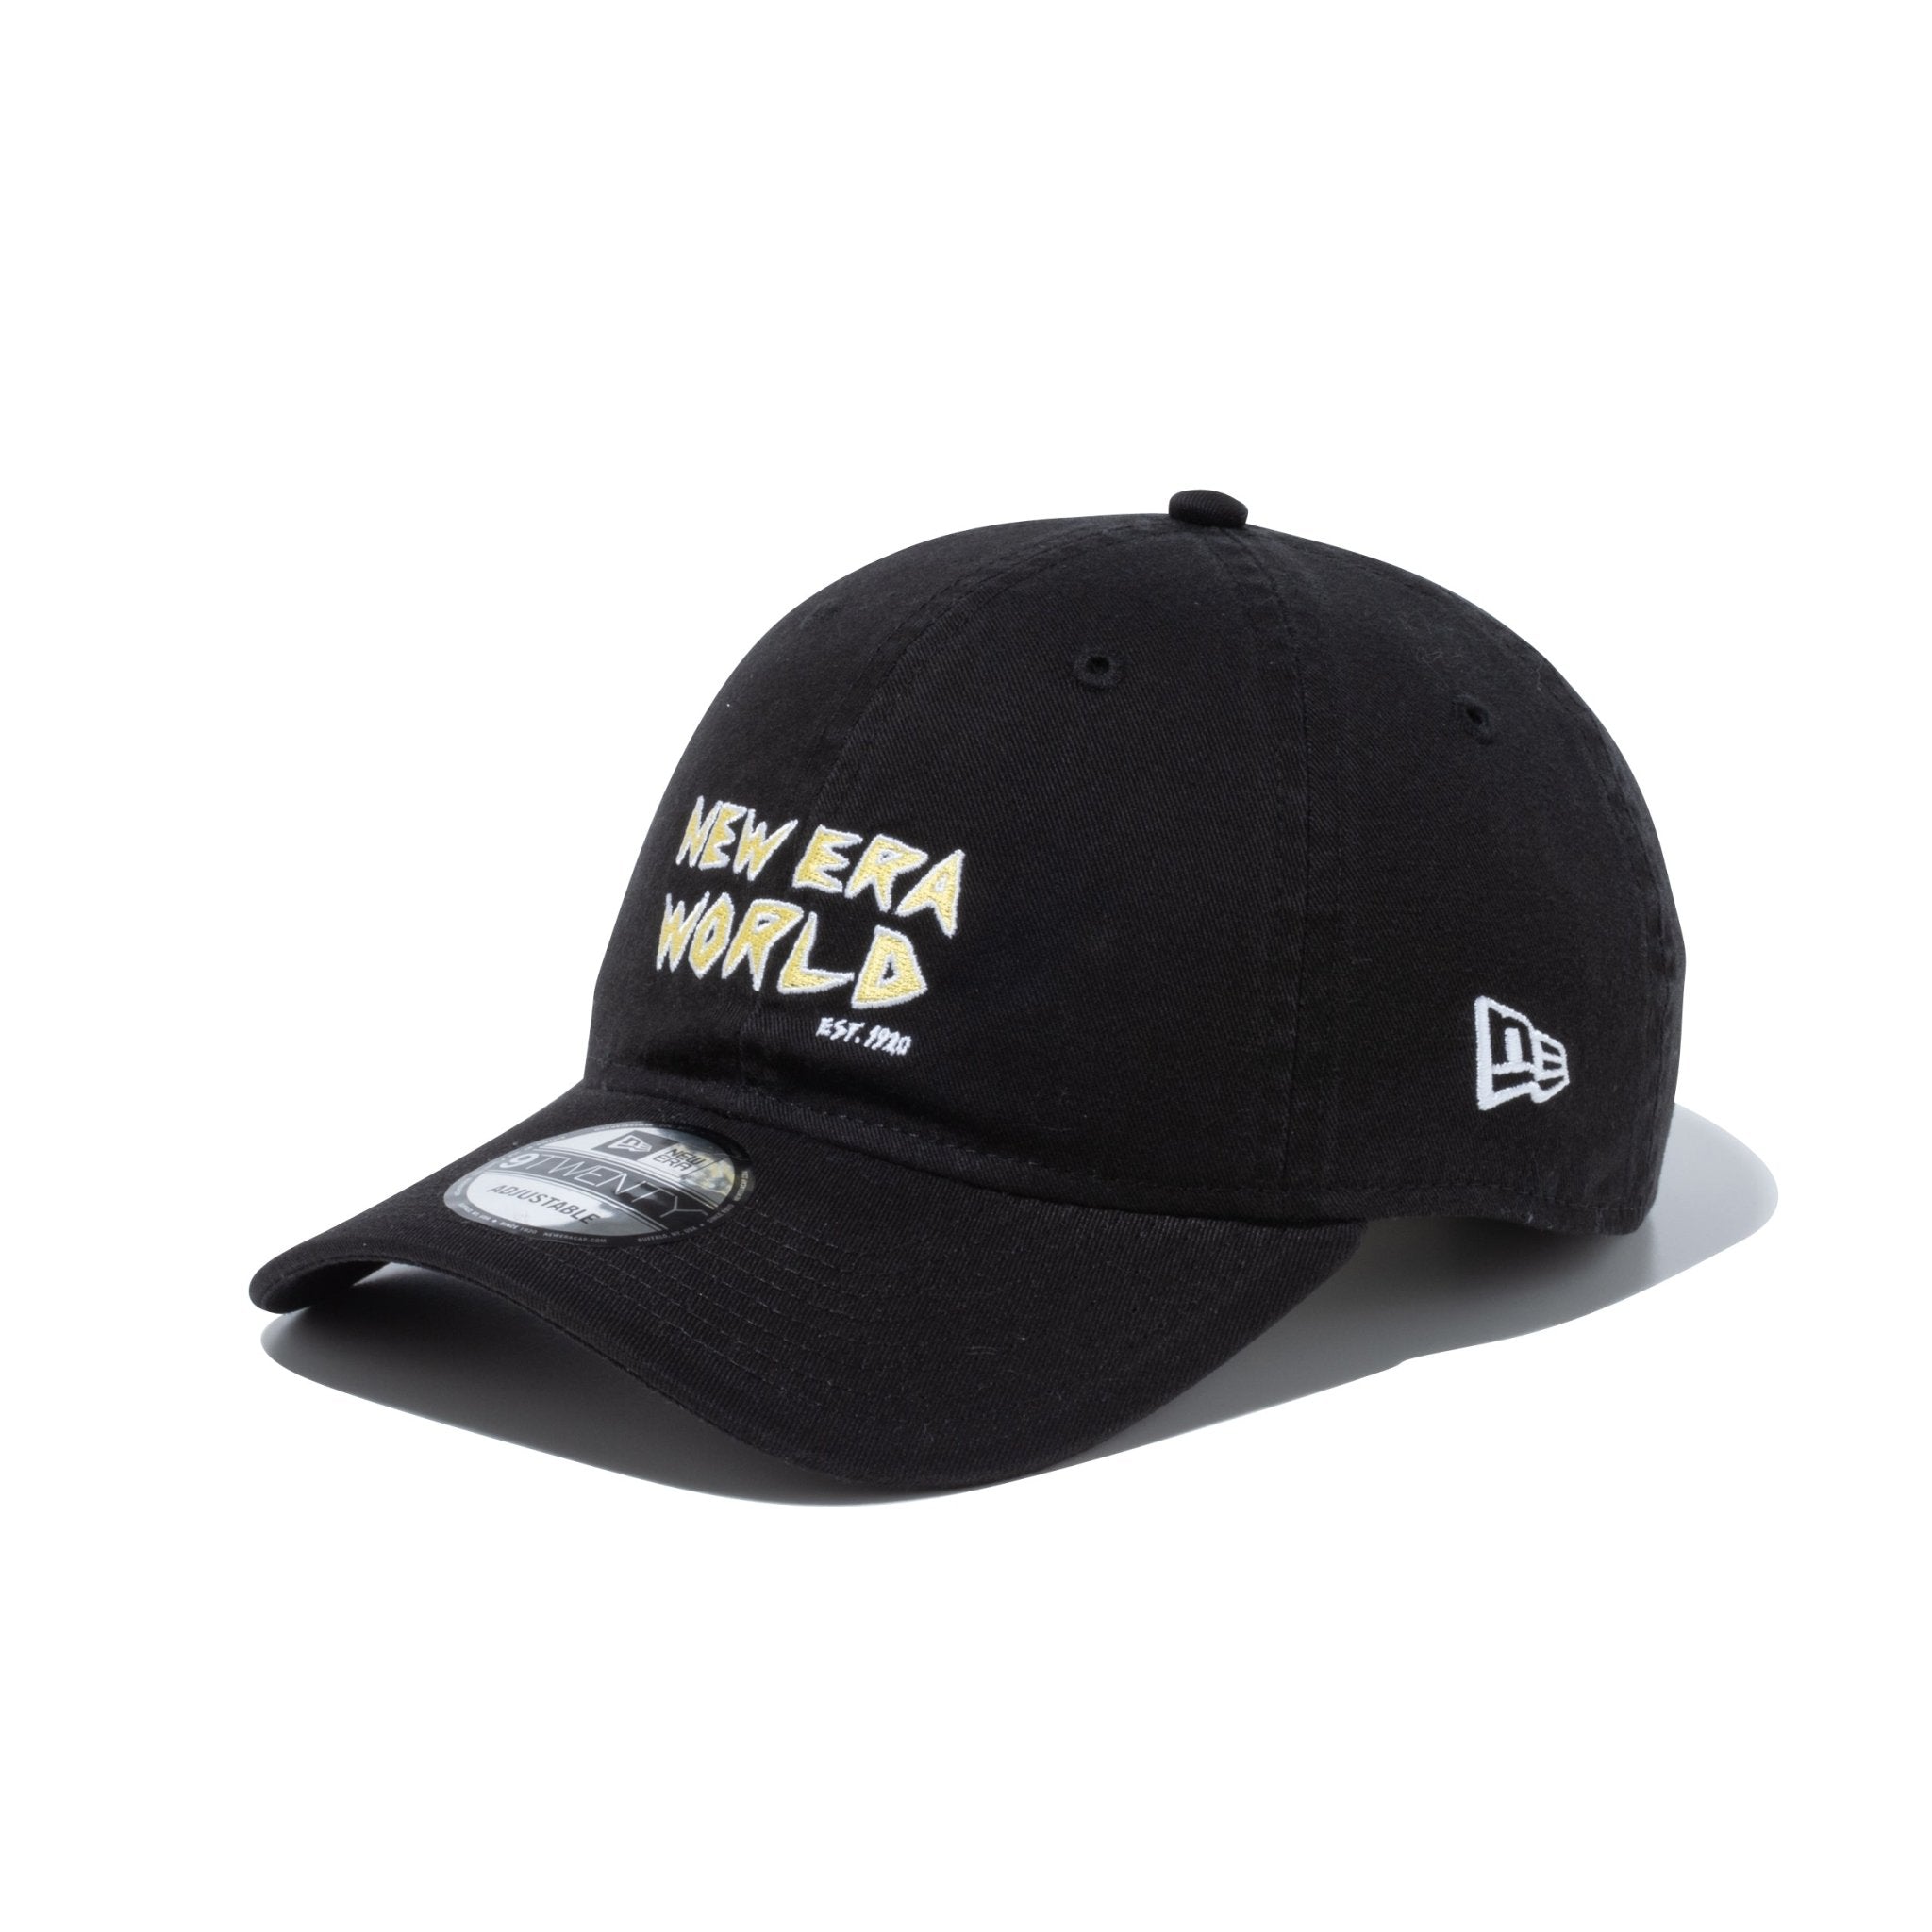 新作入荷格安Los Angeles NEW ERA WORLD ブラック 帽子